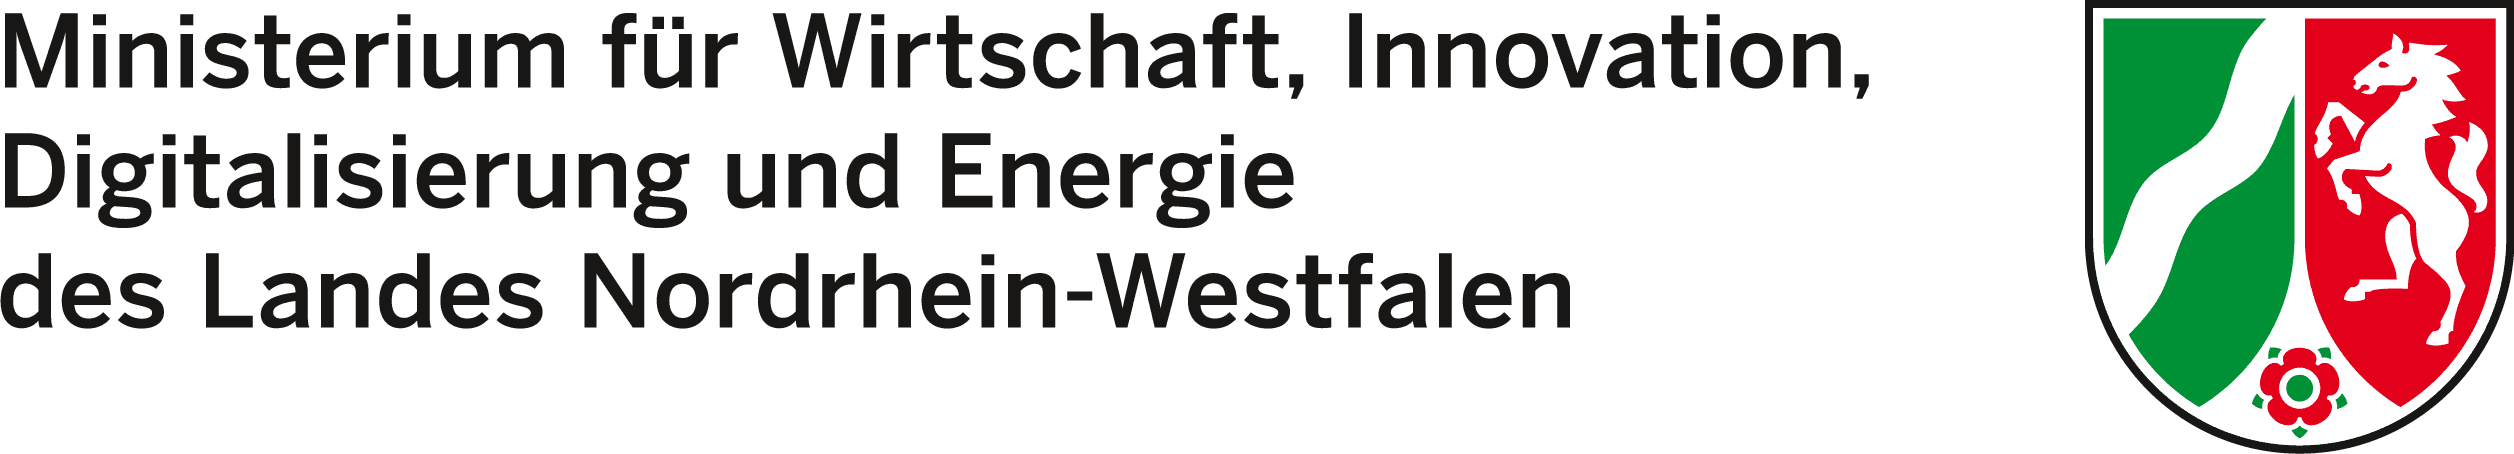 Innoloft-Kundenlogo Landesregierung Nordrhein-Westfalen